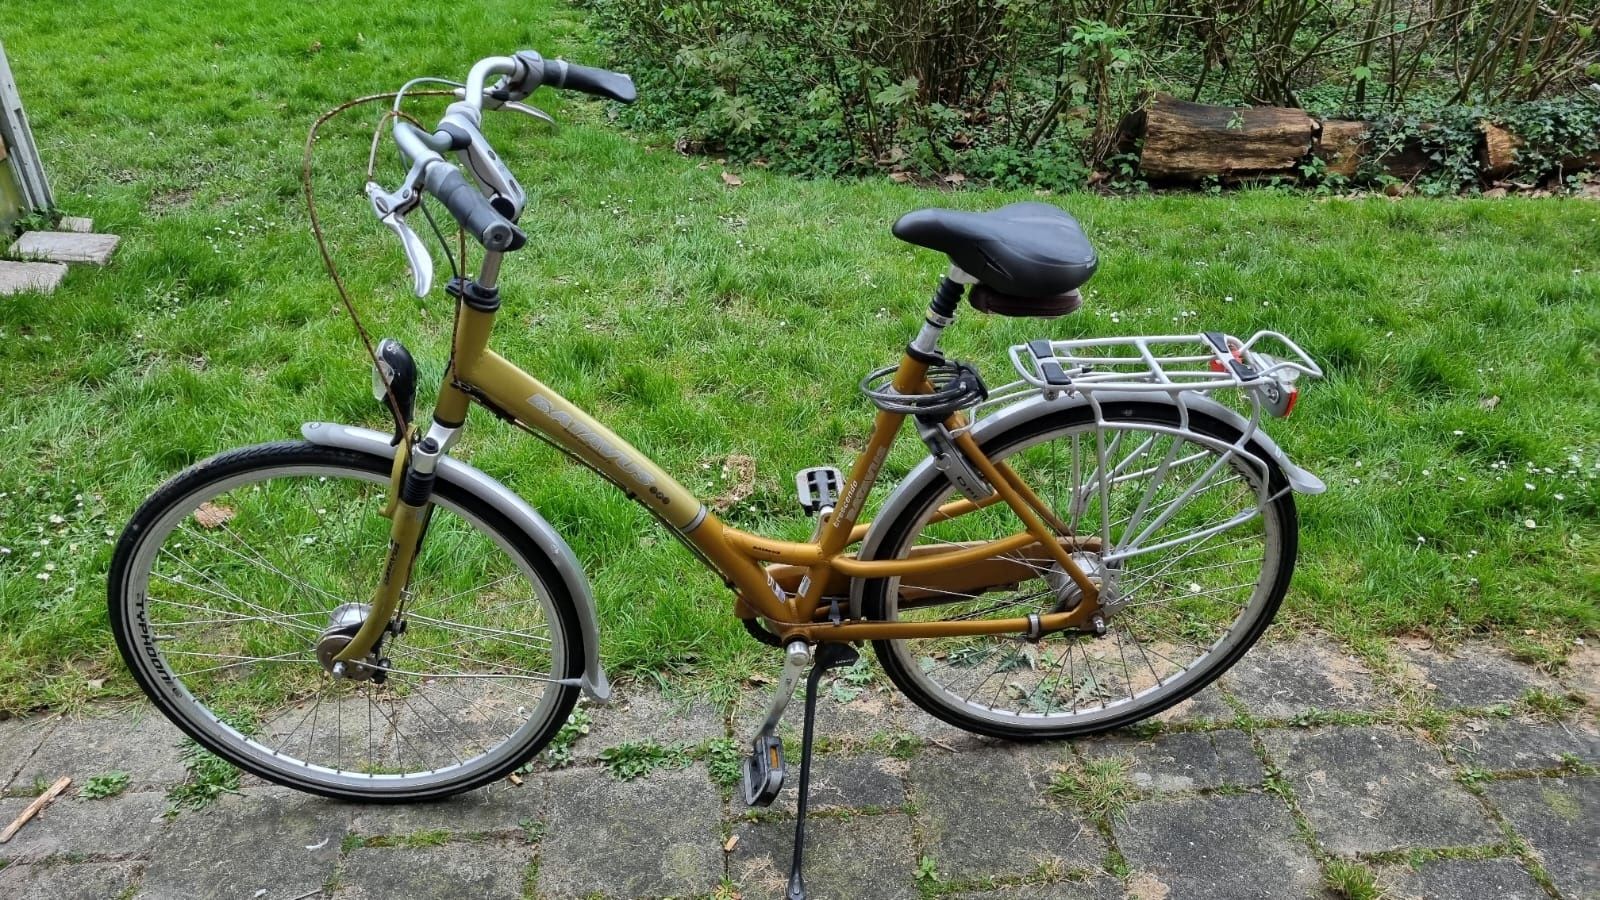 Sprzedam damkę Batavus-możliwy transport roweru